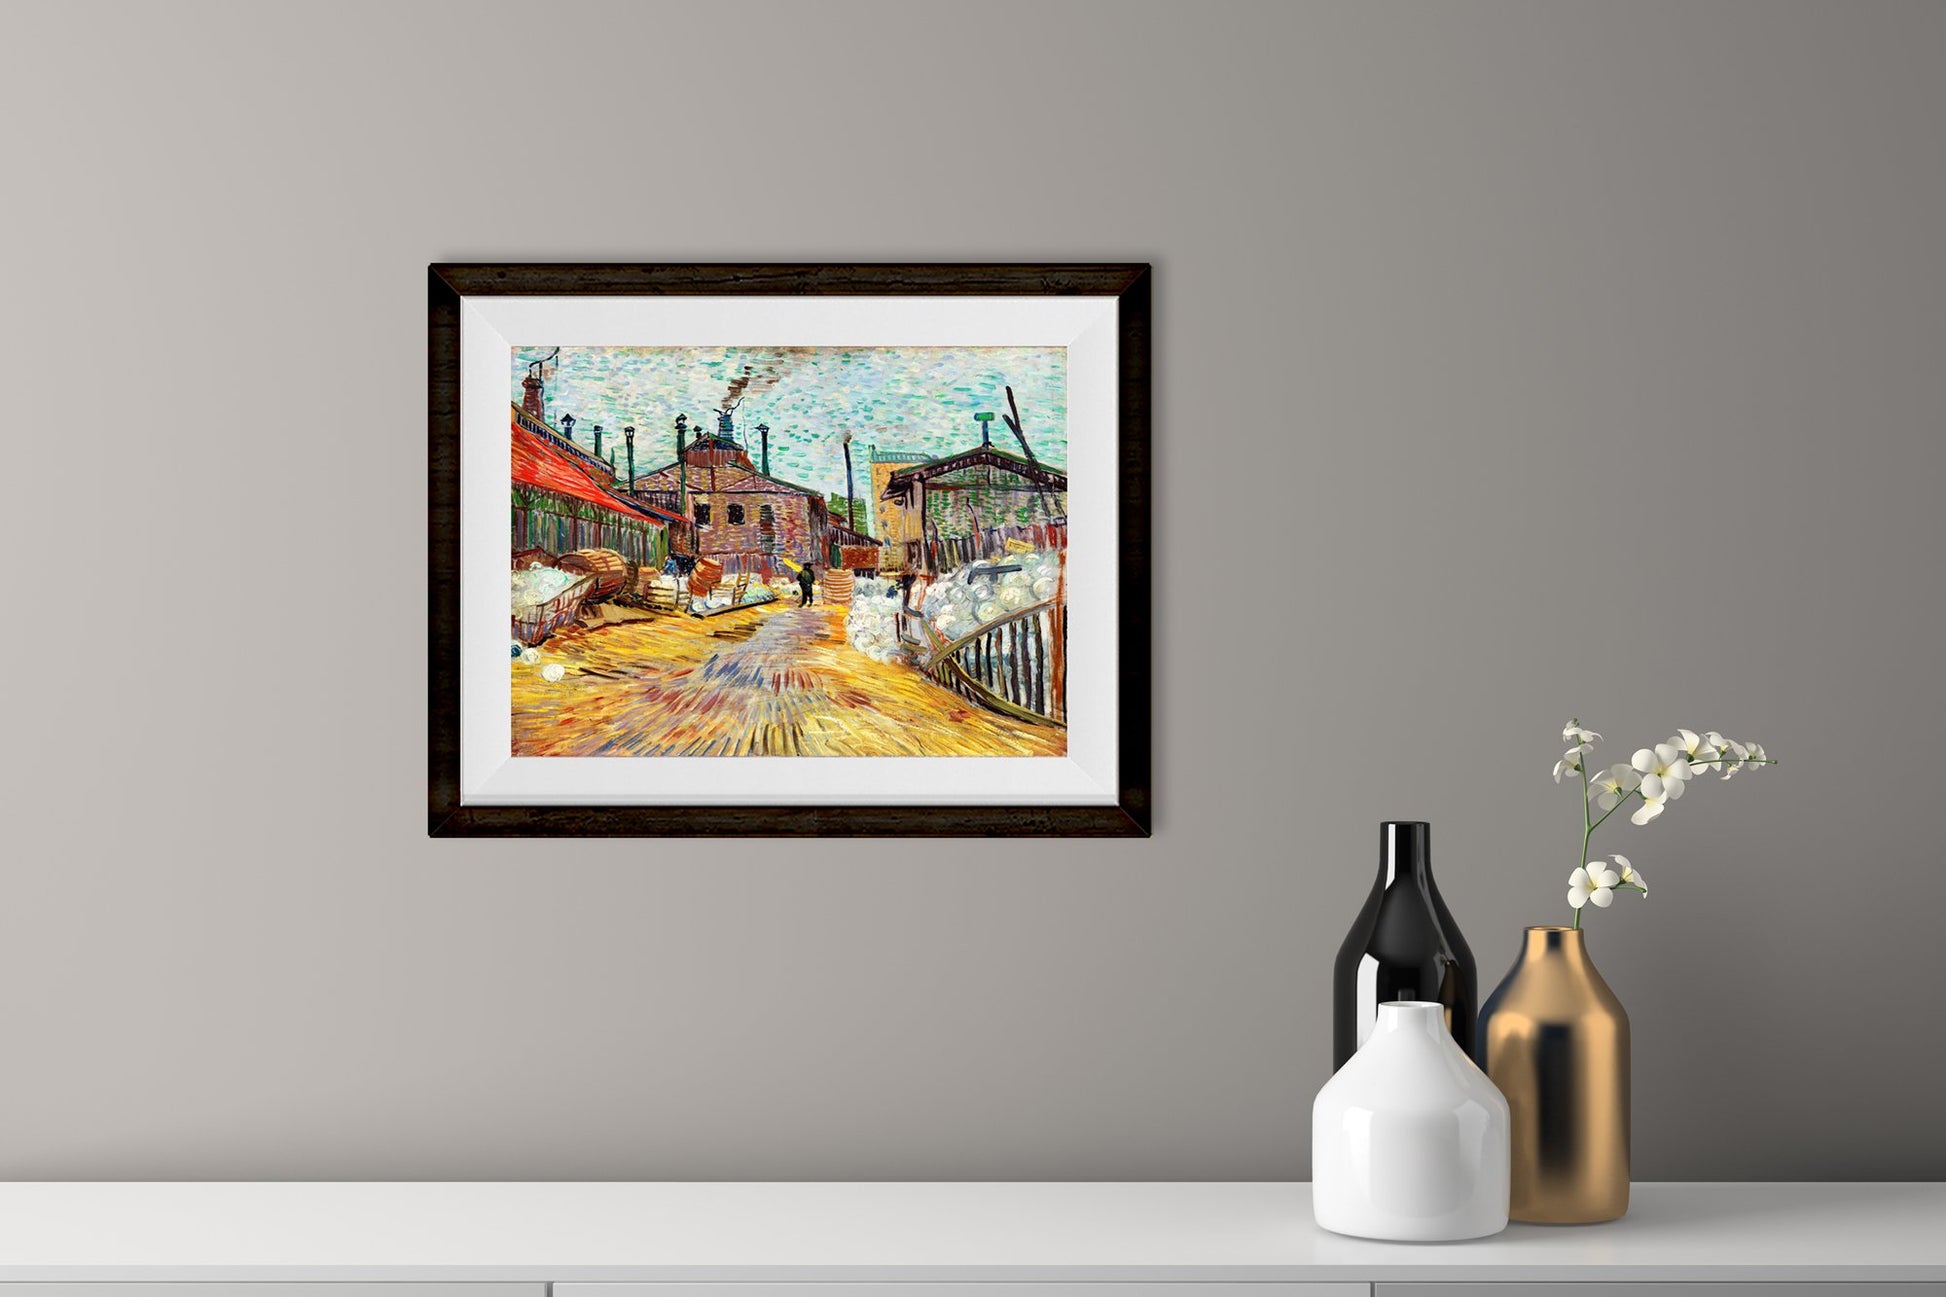 Painting of a factory By Van Gogh - Meri Deewar - MeriDeewar